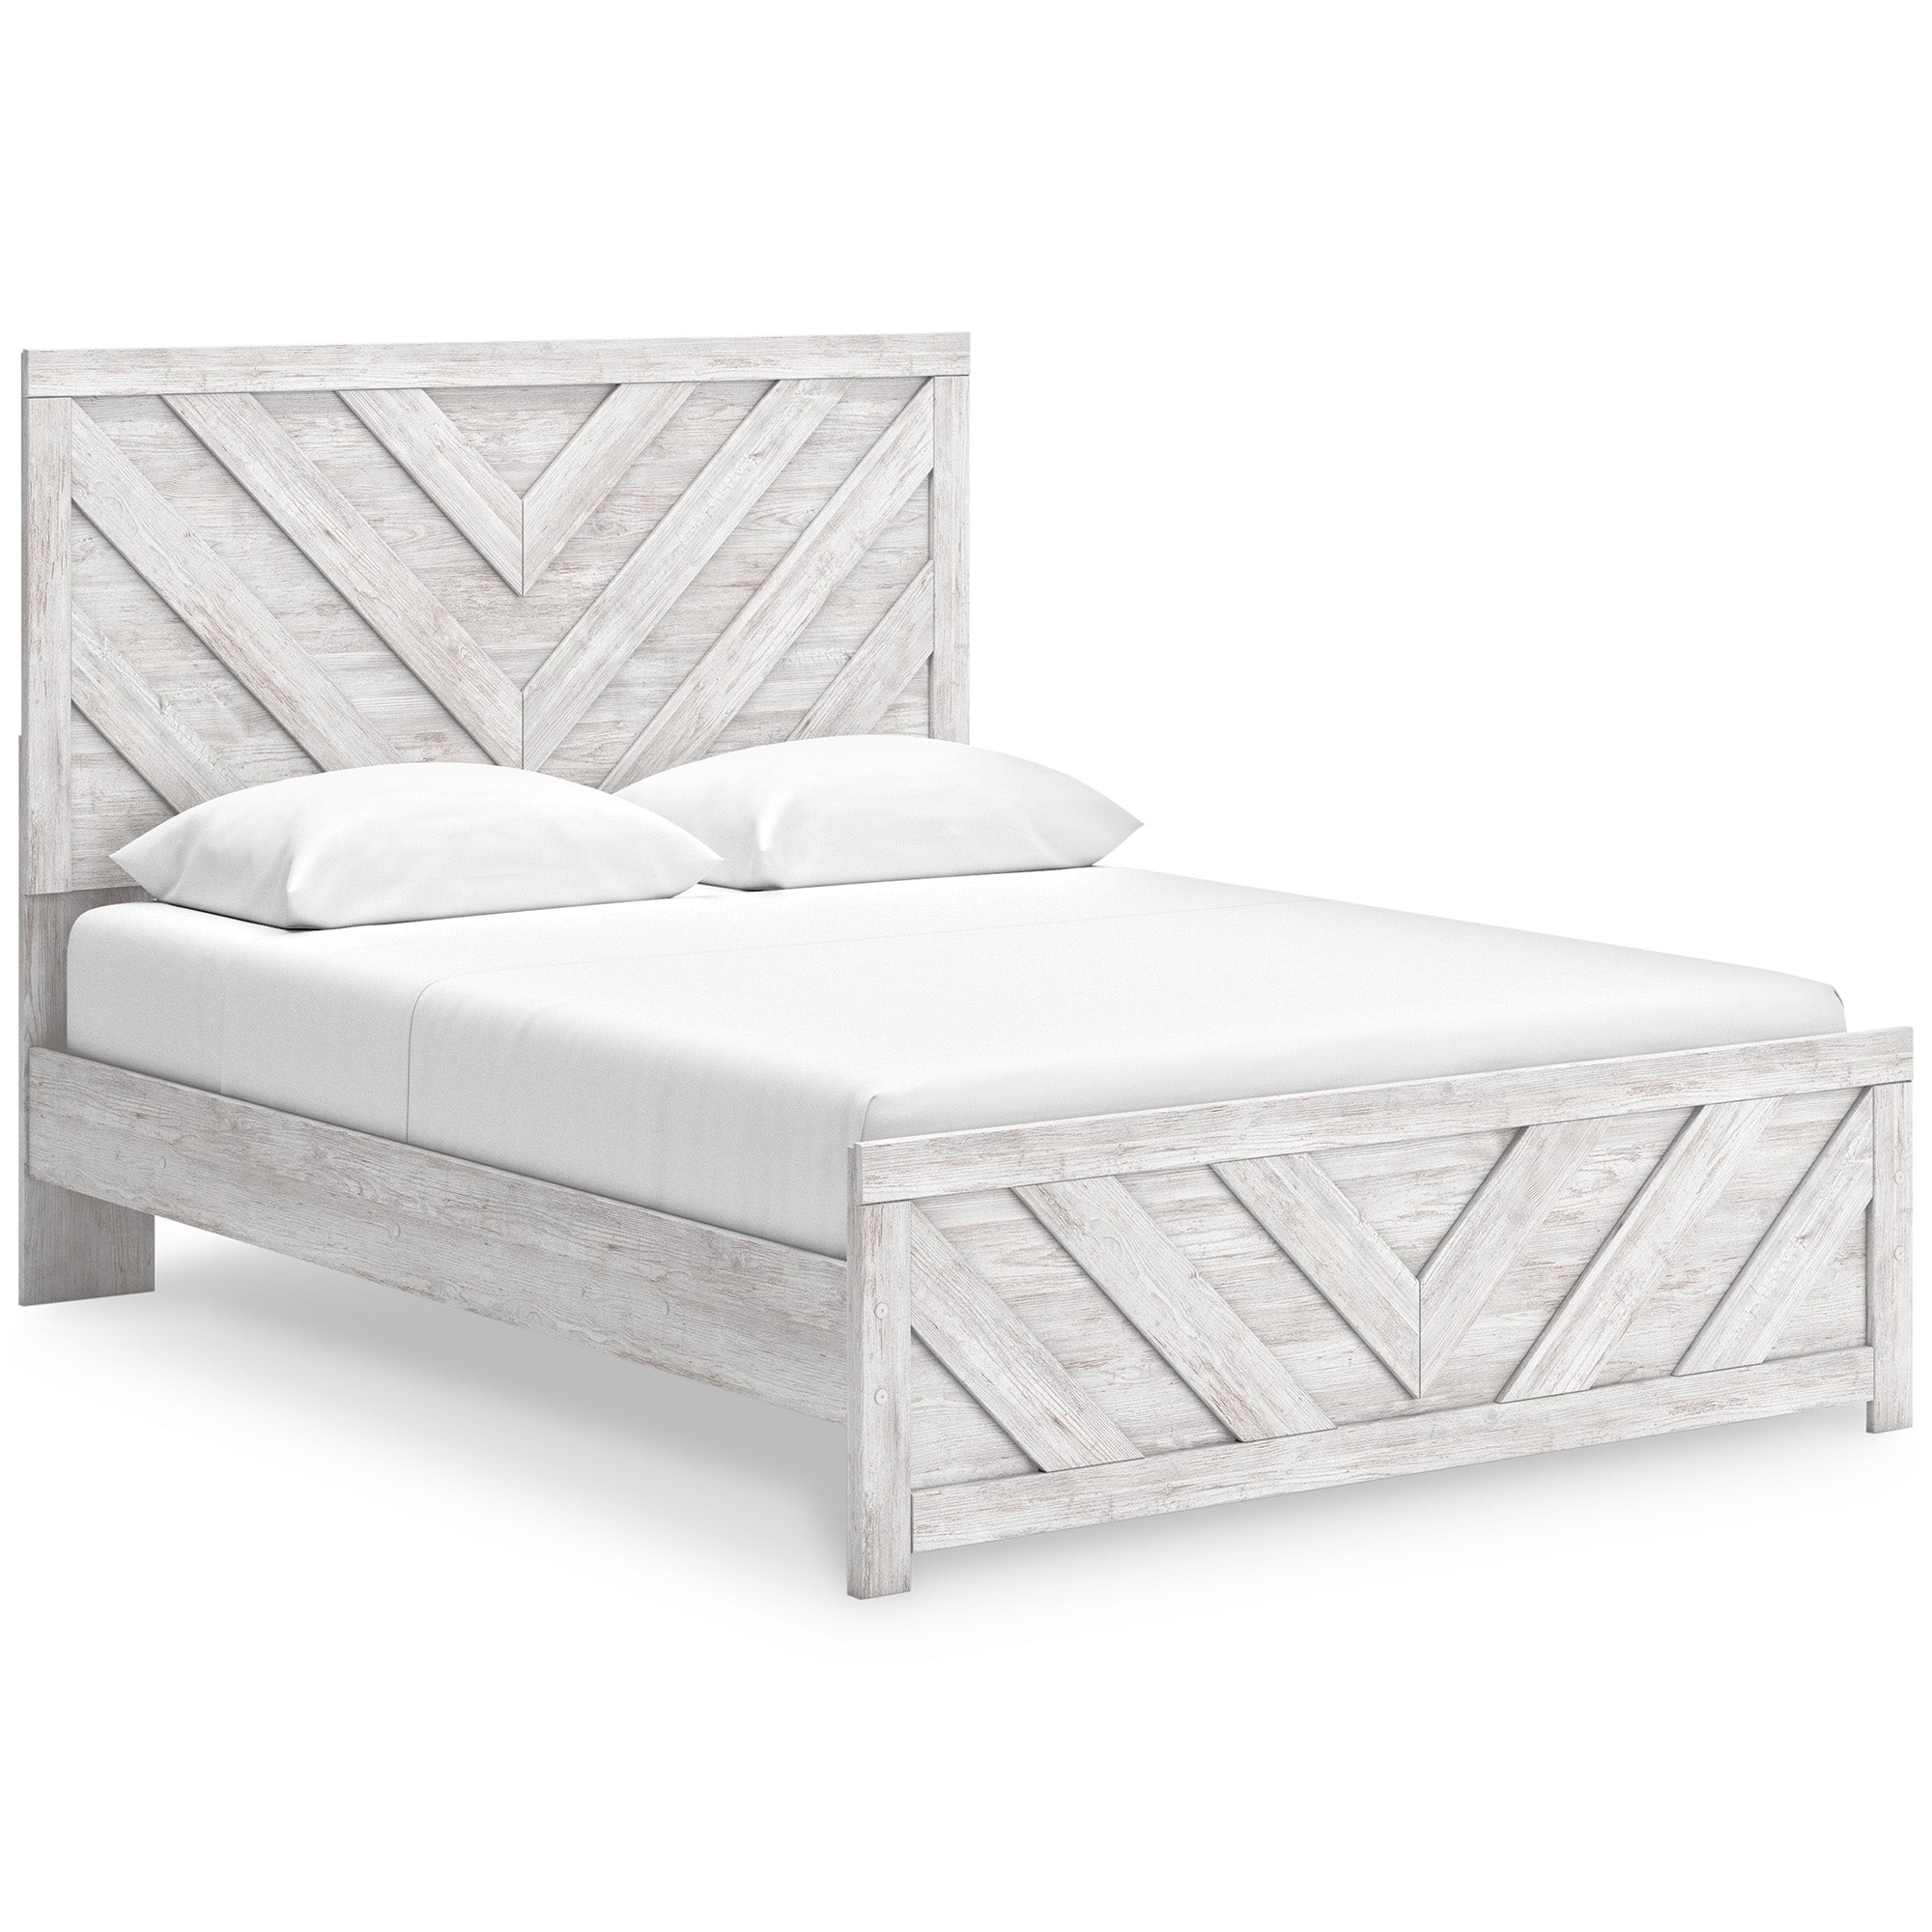 Cayboni Queen Panel Bed